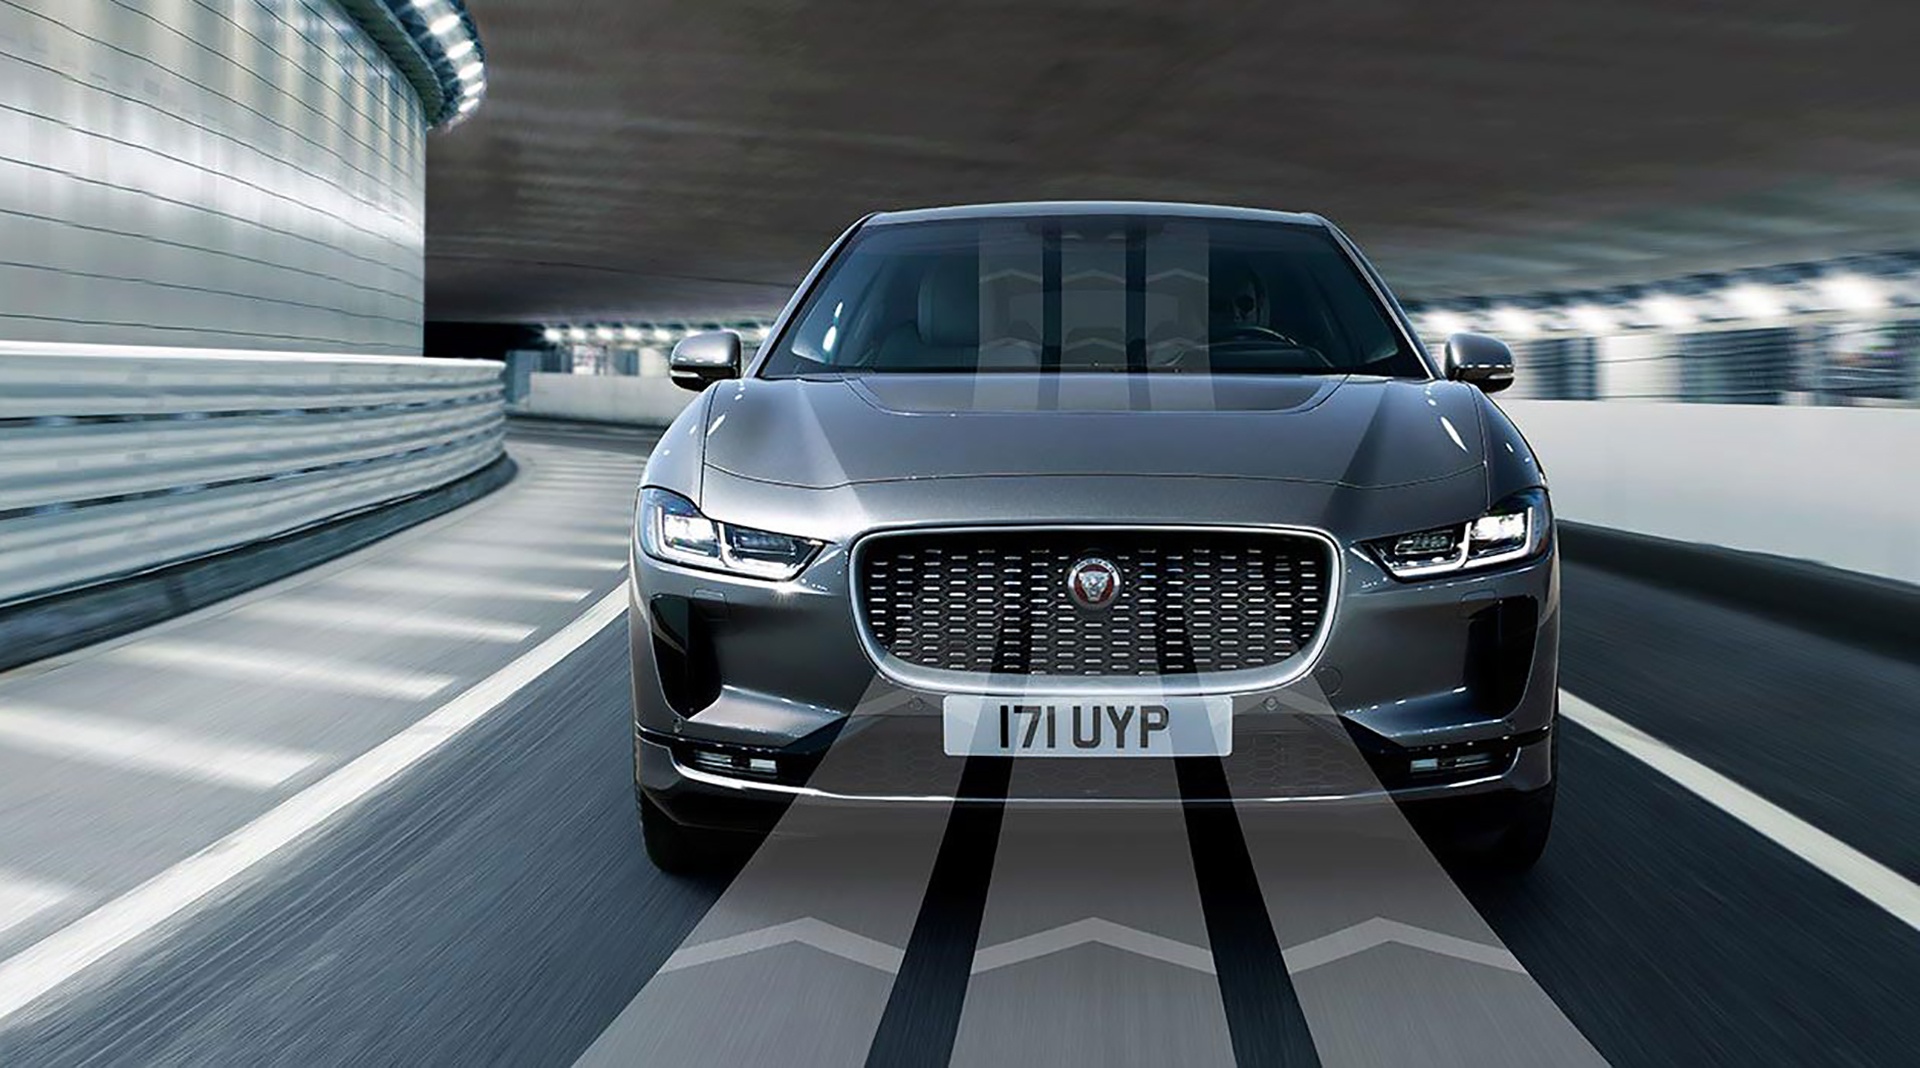 Nu kommer Jaguar i-Pace som 2021-model